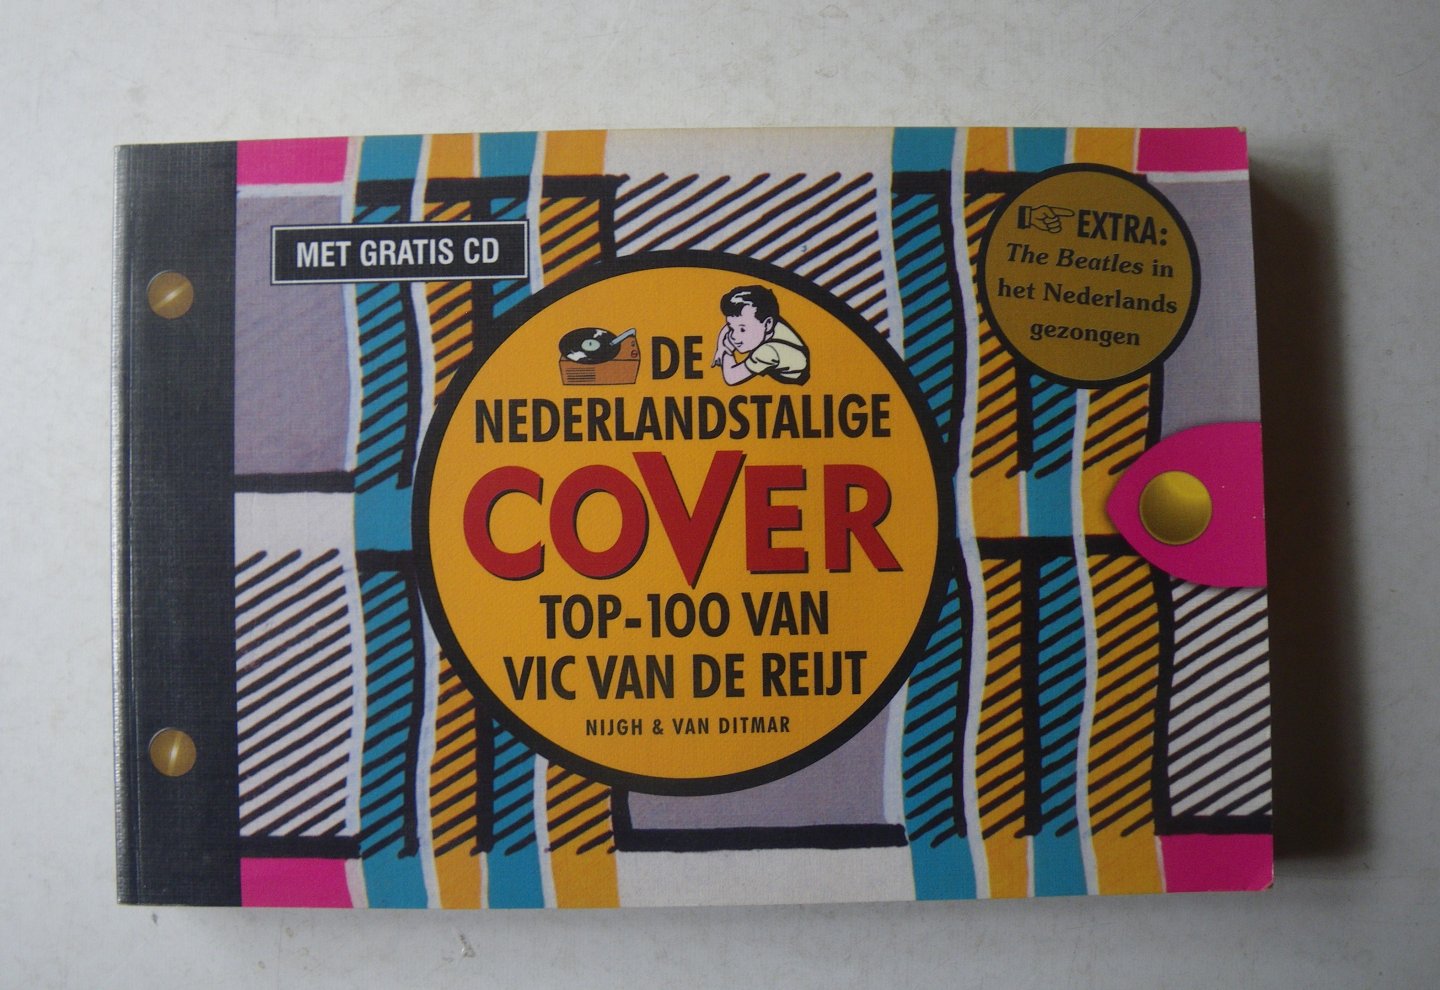 Reijt, V. van de - De Nederlandstalige cover top-100 van Vic van de Reijt